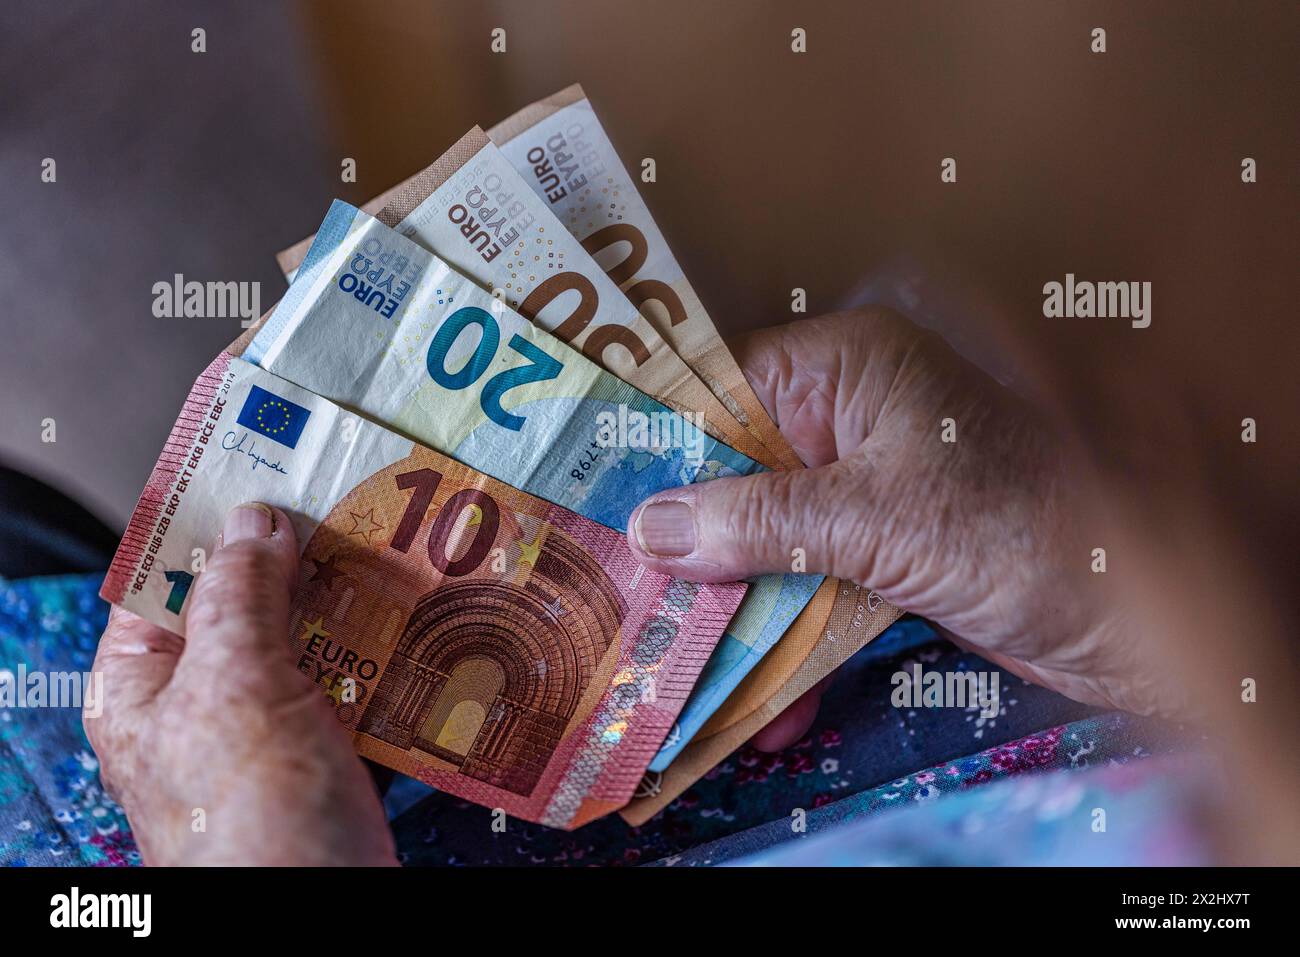 Une personne âgée aux mains froissées compte son argent à la maison dans son appartement et tient les billets de banque dans sa main, Cologne, Rhénanie du Nord-Westphalie, Allemagne Banque D'Images